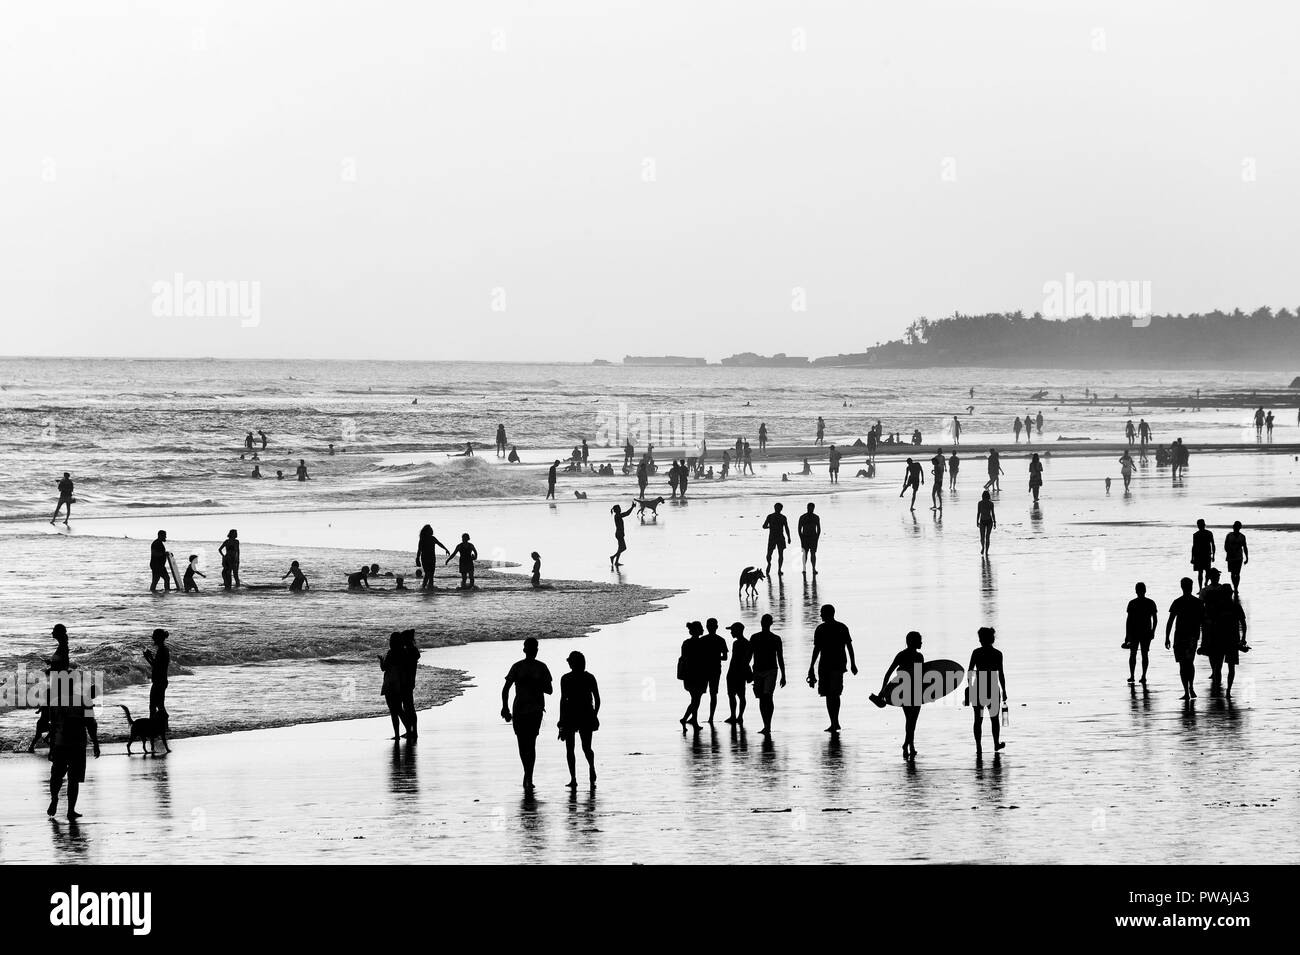 Les gens qui marchent sur la plage sur l'océan. Noir et blanc. L'île de Bali, Indonésie Banque D'Images